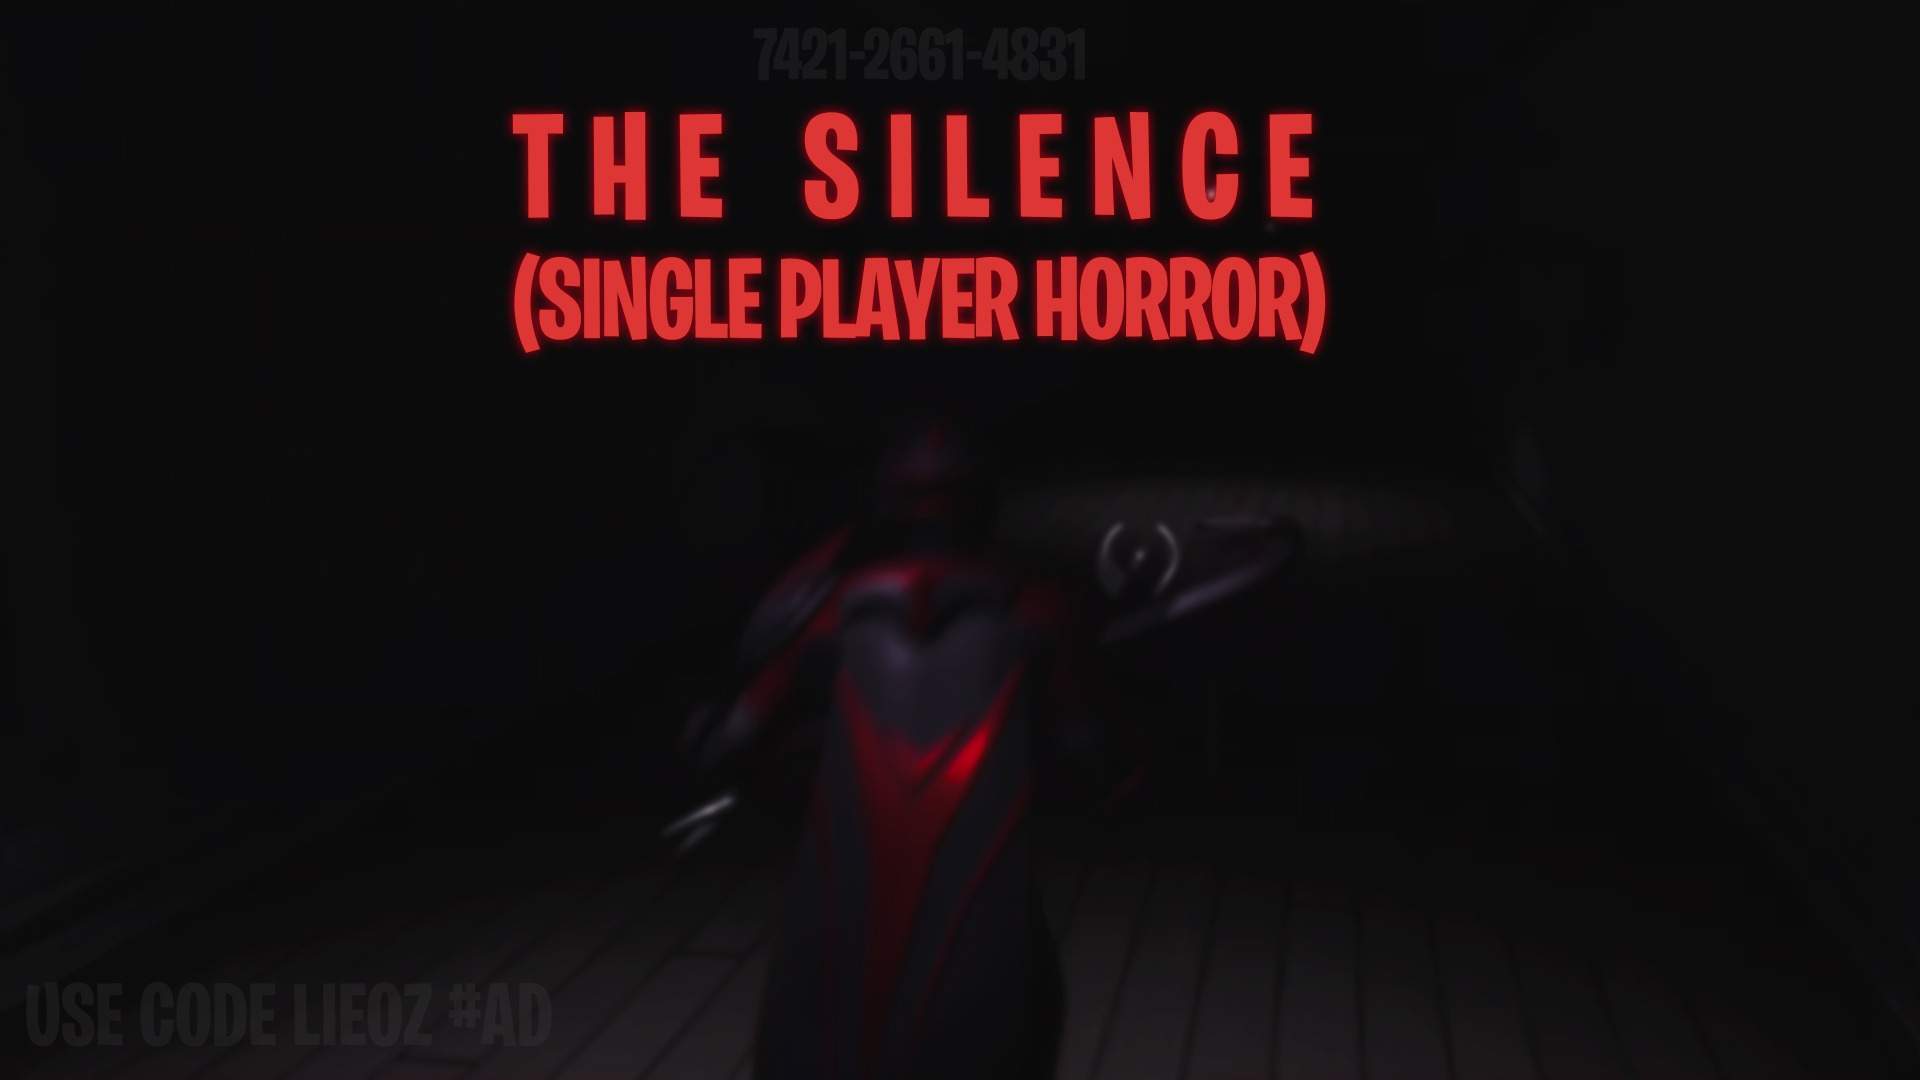 THE SILENCE (HORROR)